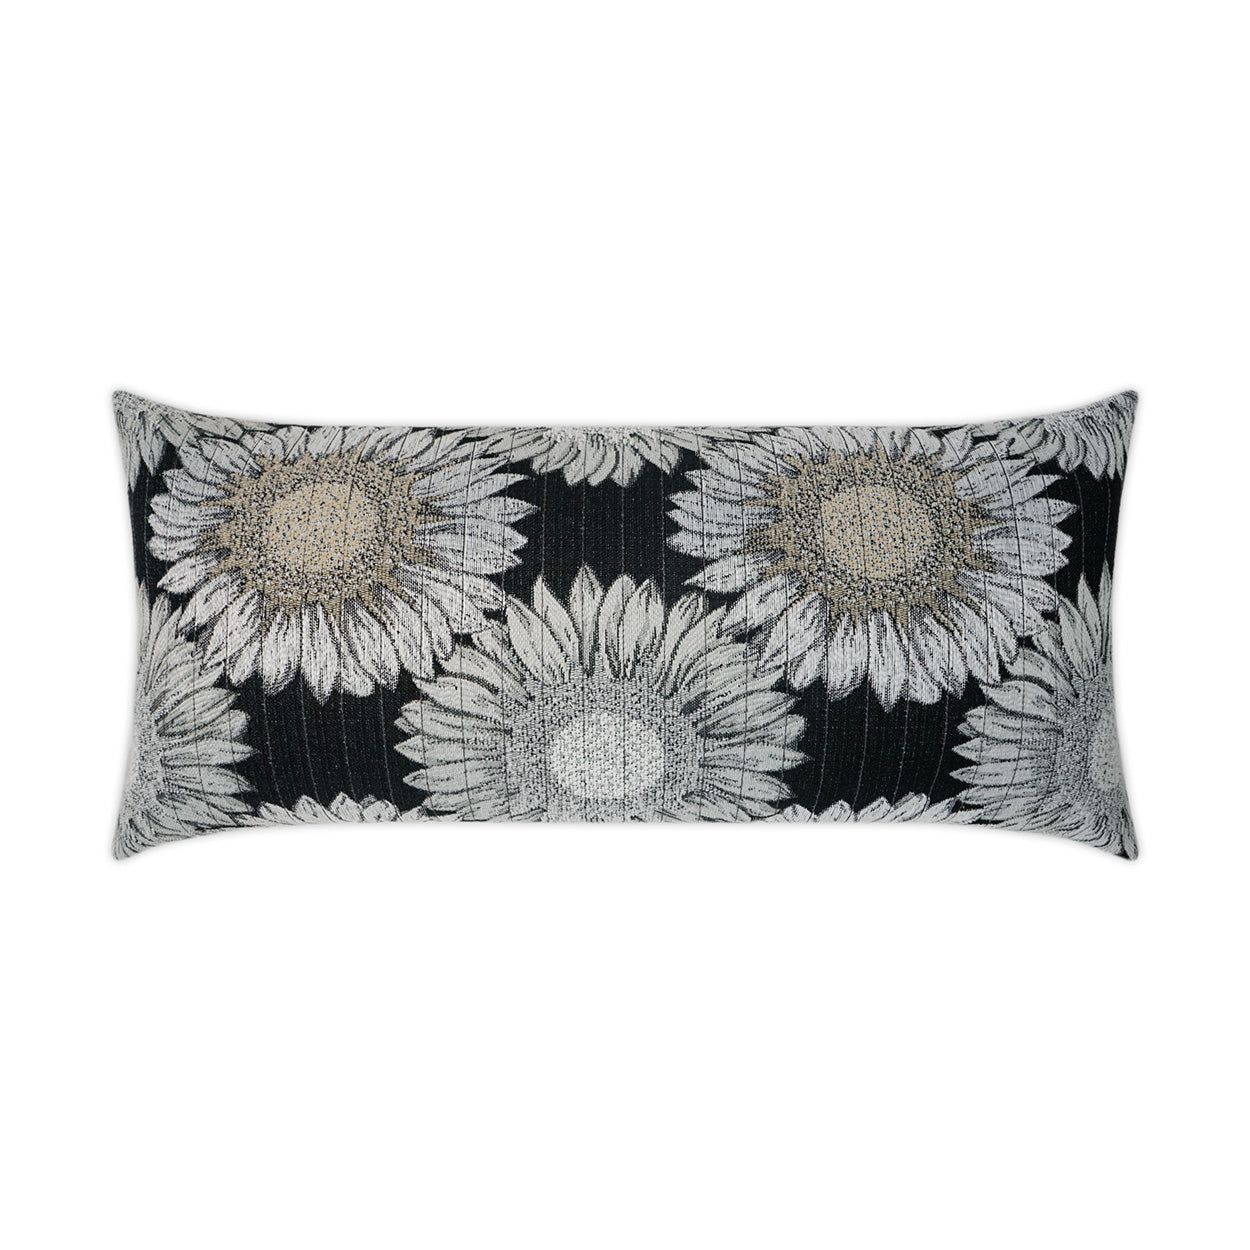 Outdoor Daisy Chain Lumbar Pillow - Black